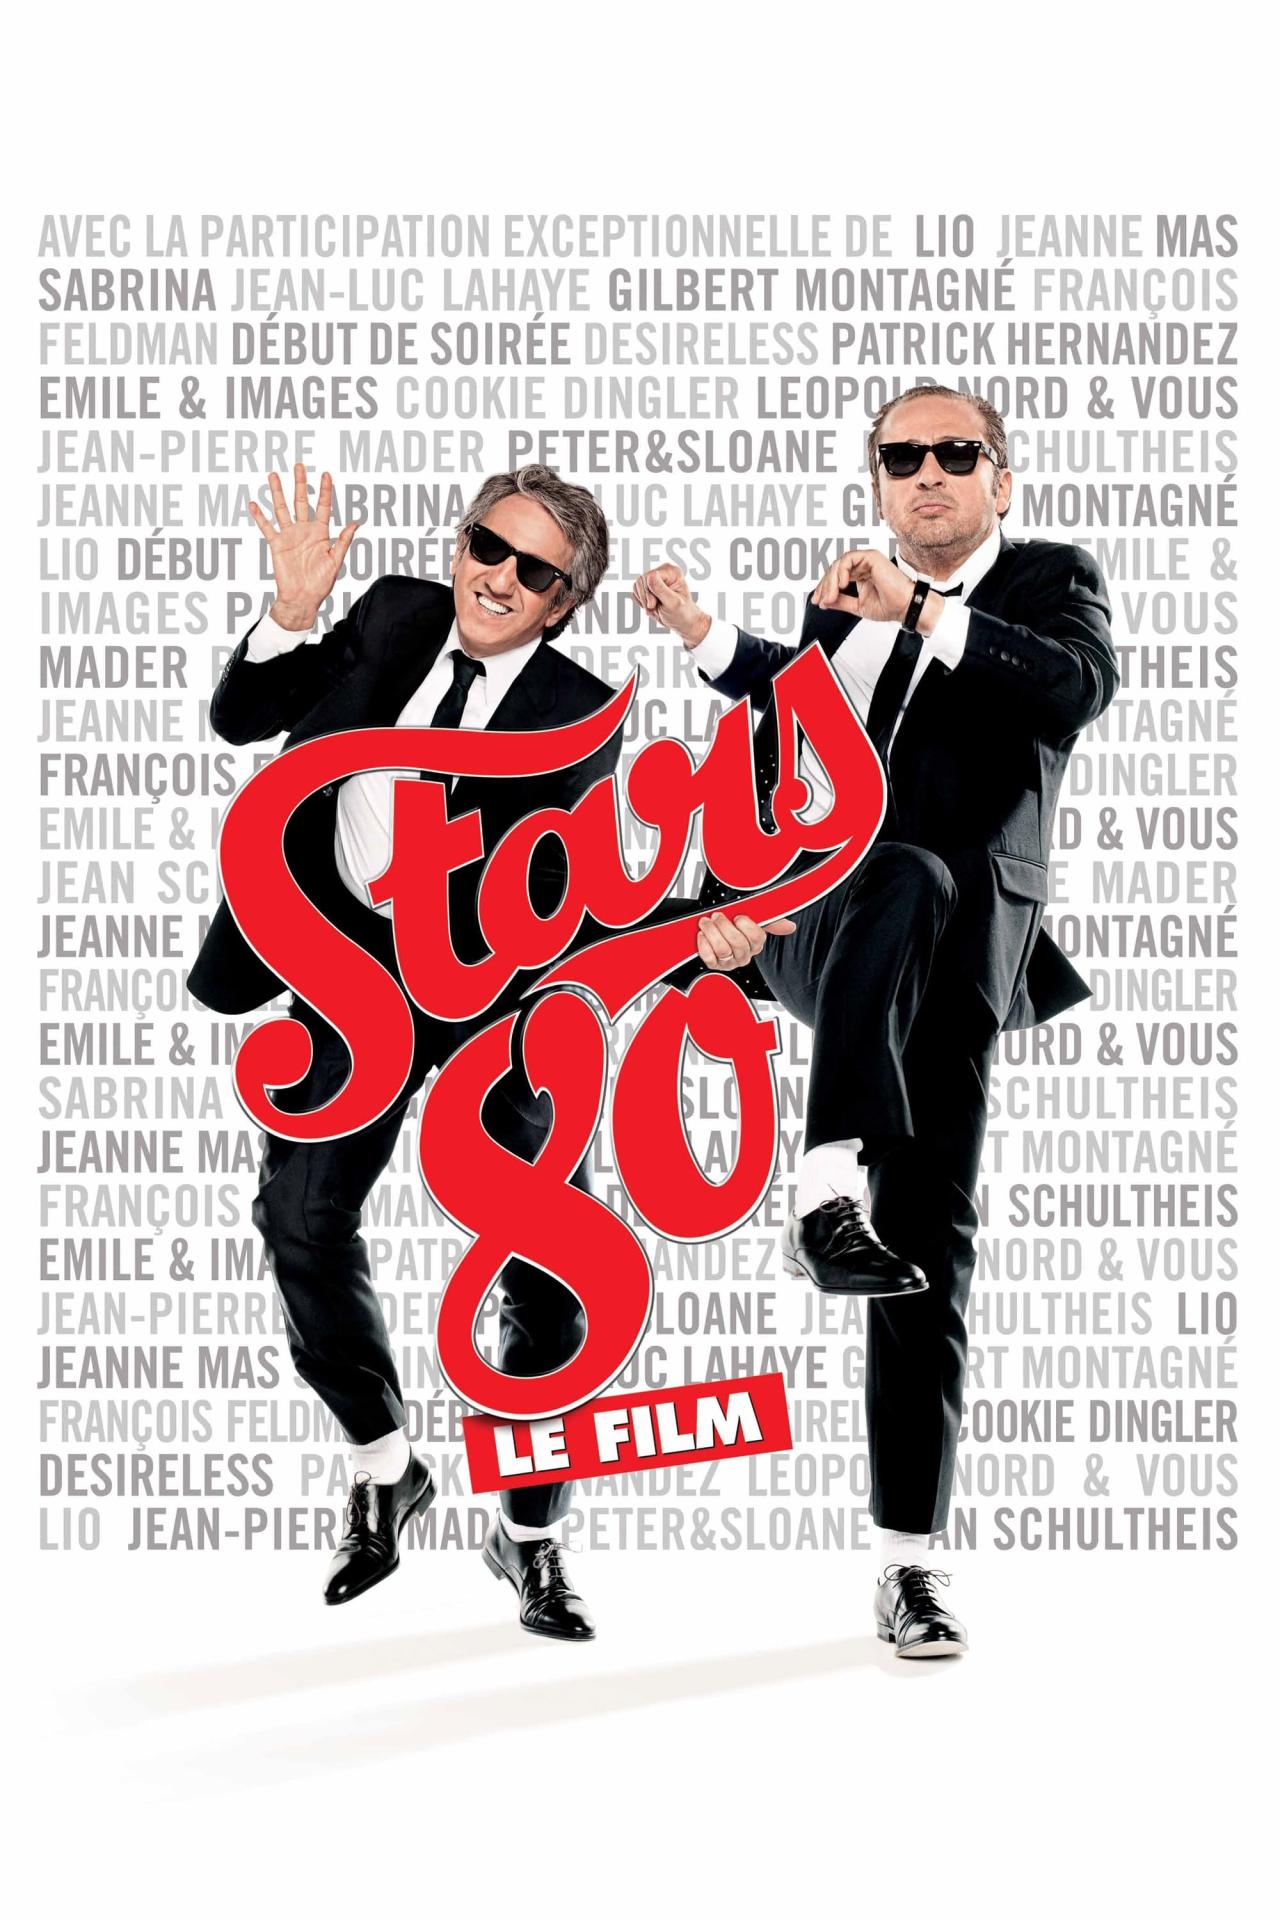 Stars 80 est-il disponible sur Netflix ou autre ?